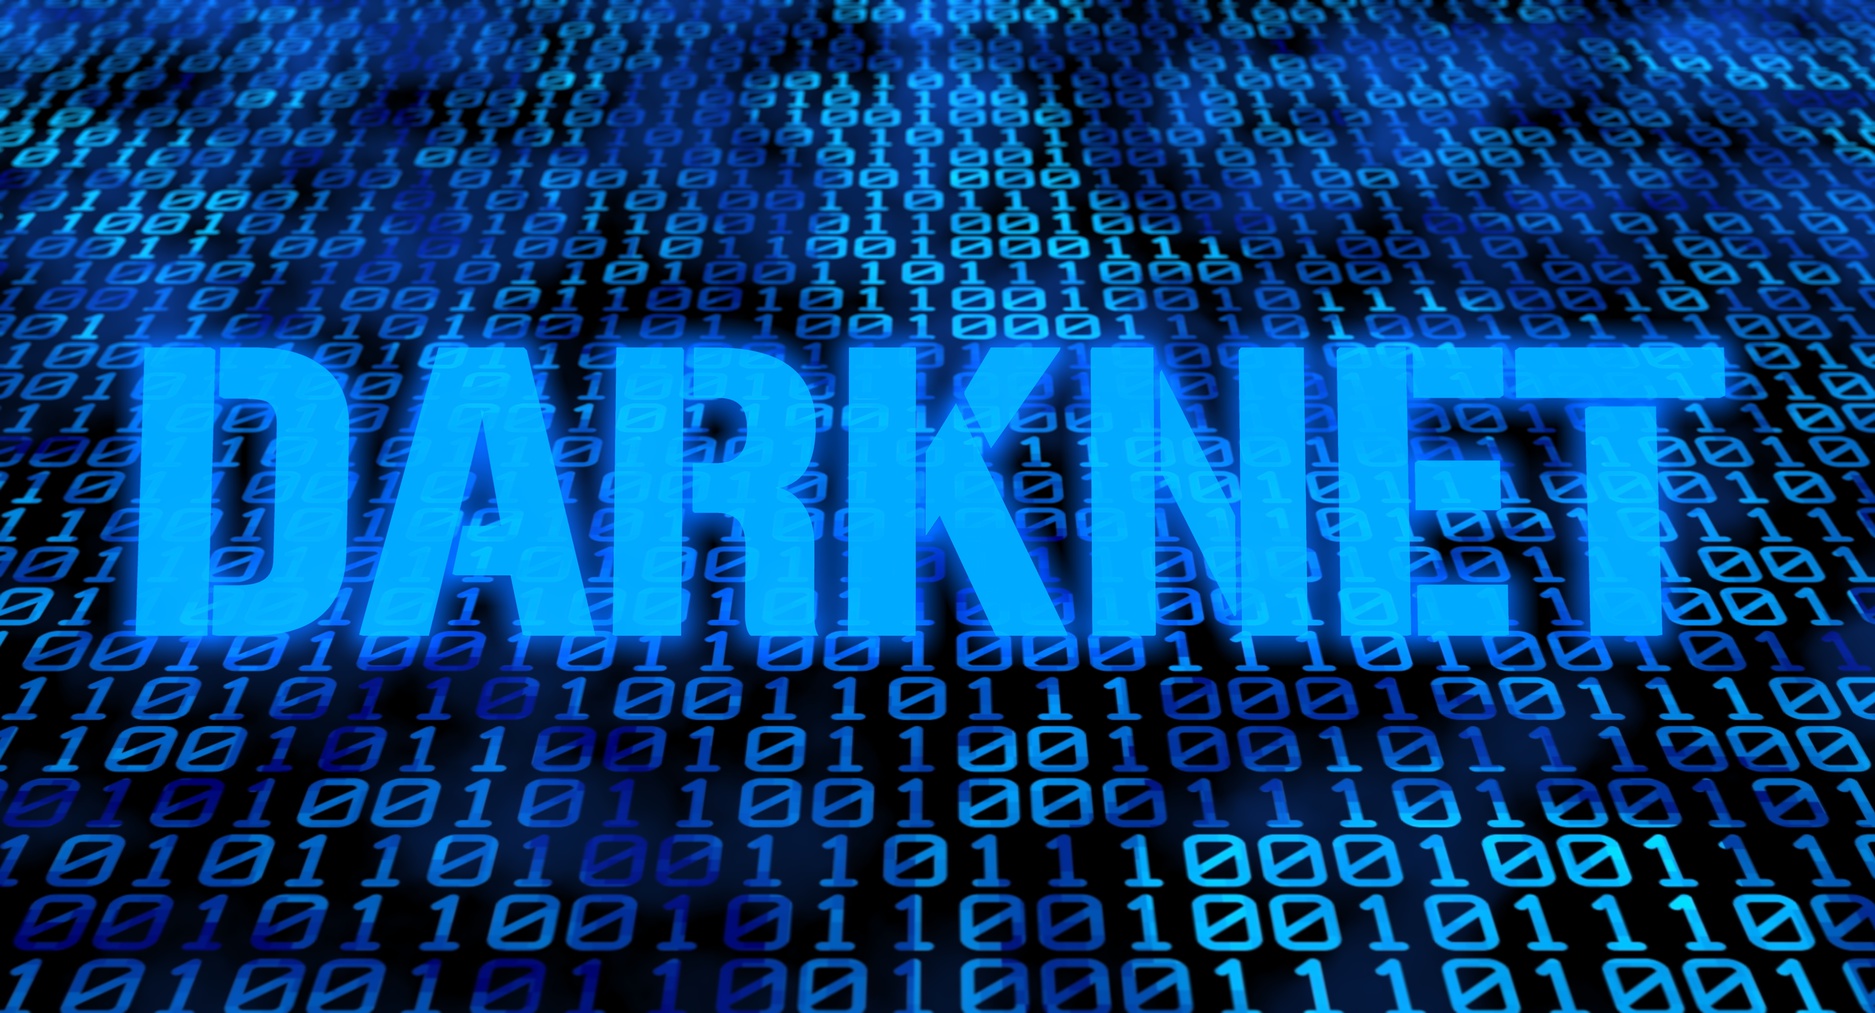 Darknet Seiten Dream Market